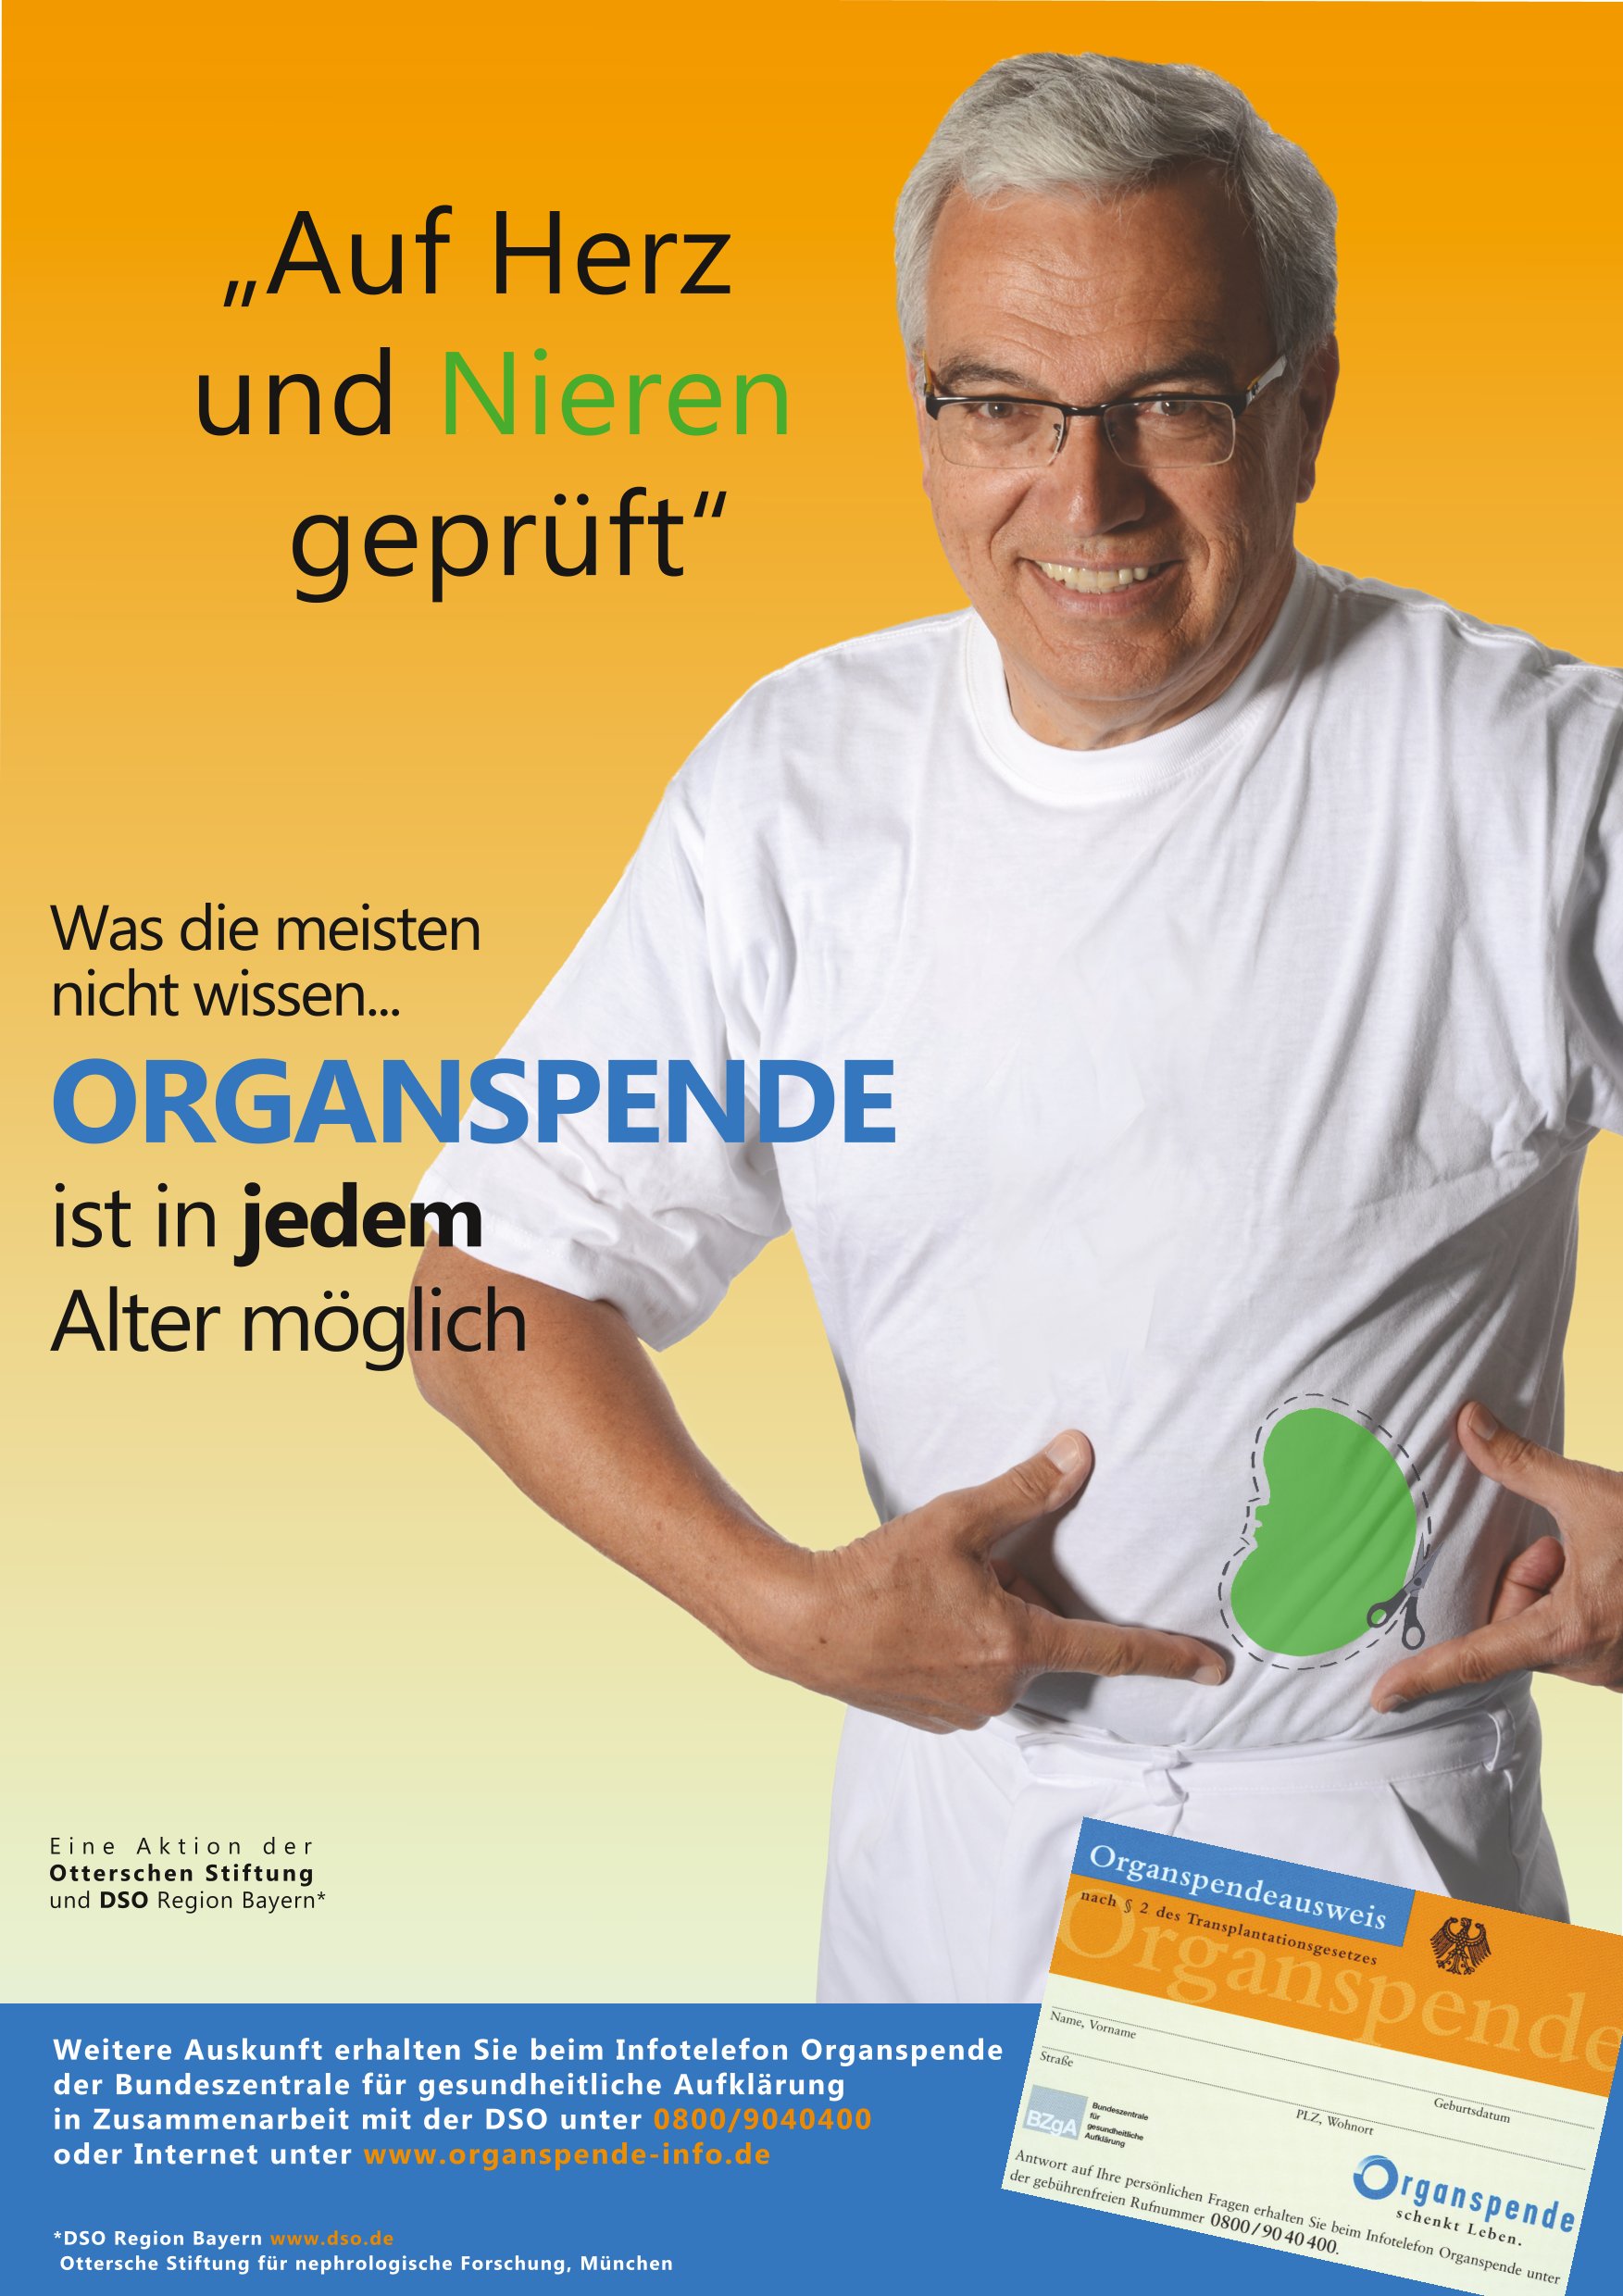 Werbemotiv: Auf Herz und Nieren geprüft - Organspende ist in jedem Alter möglich.